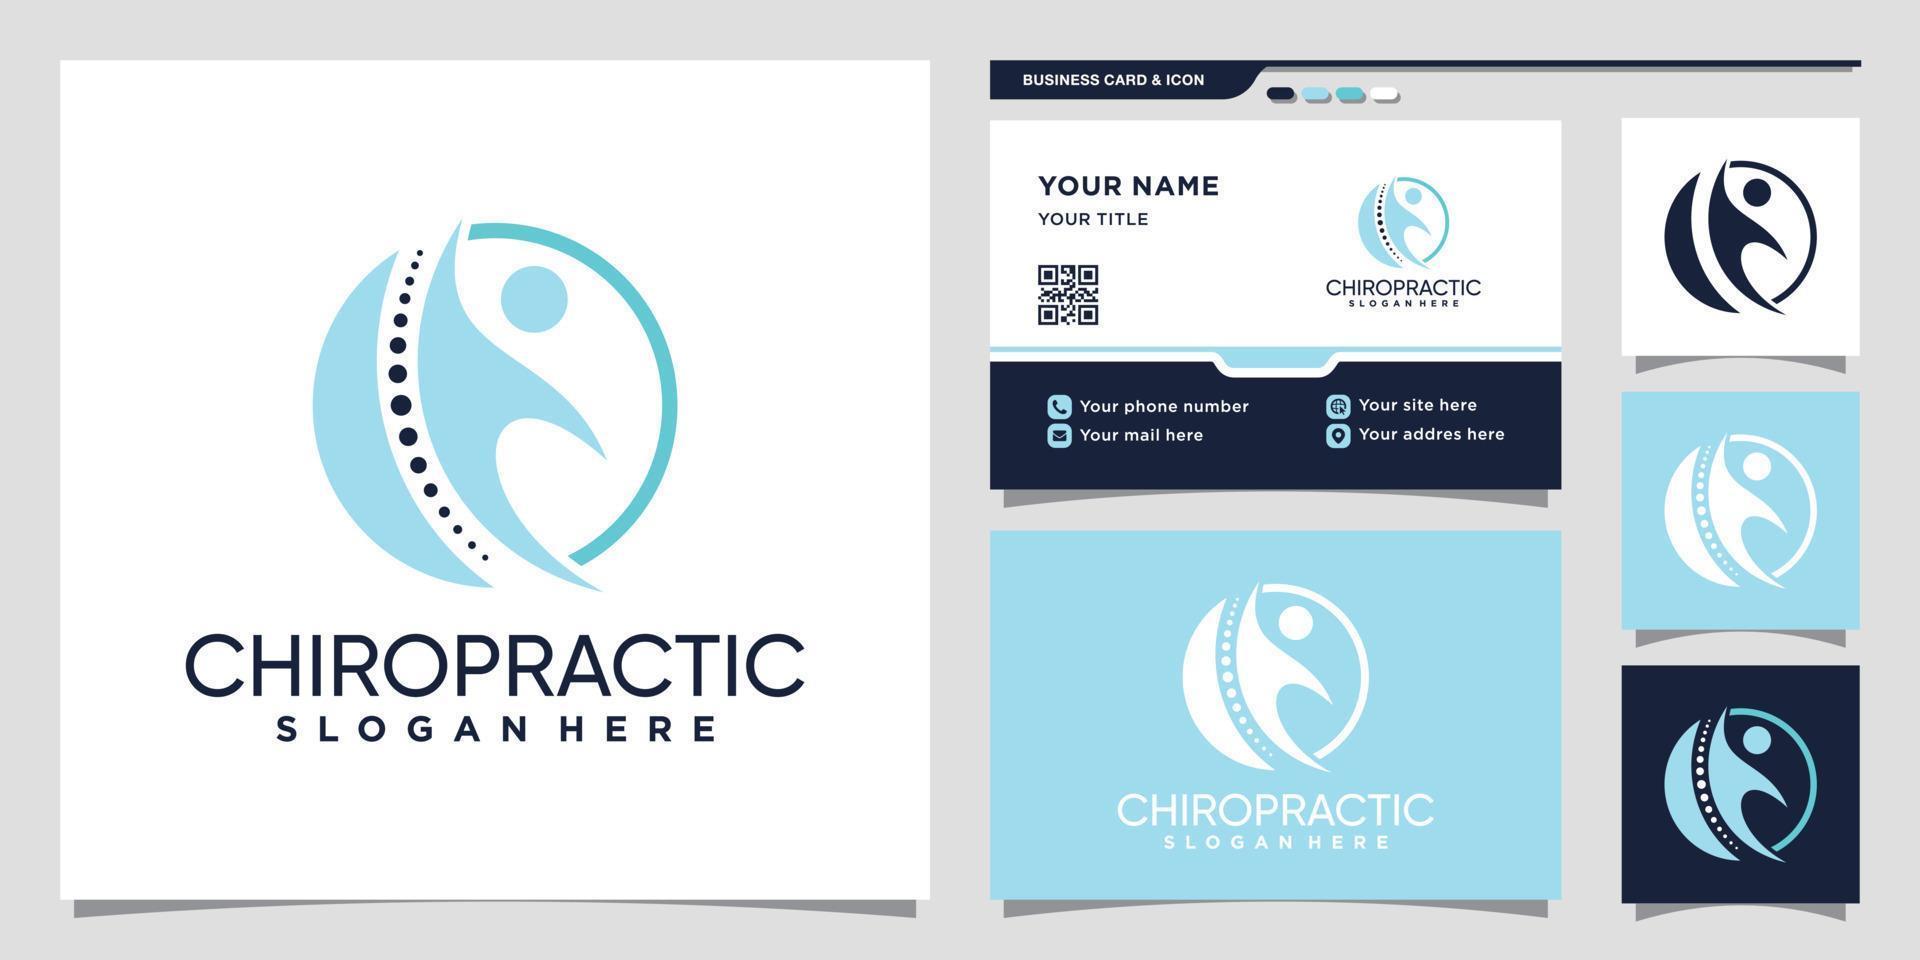 modelo de design de logotipo de quiropraxia com vetor premium de design de cartão de visita